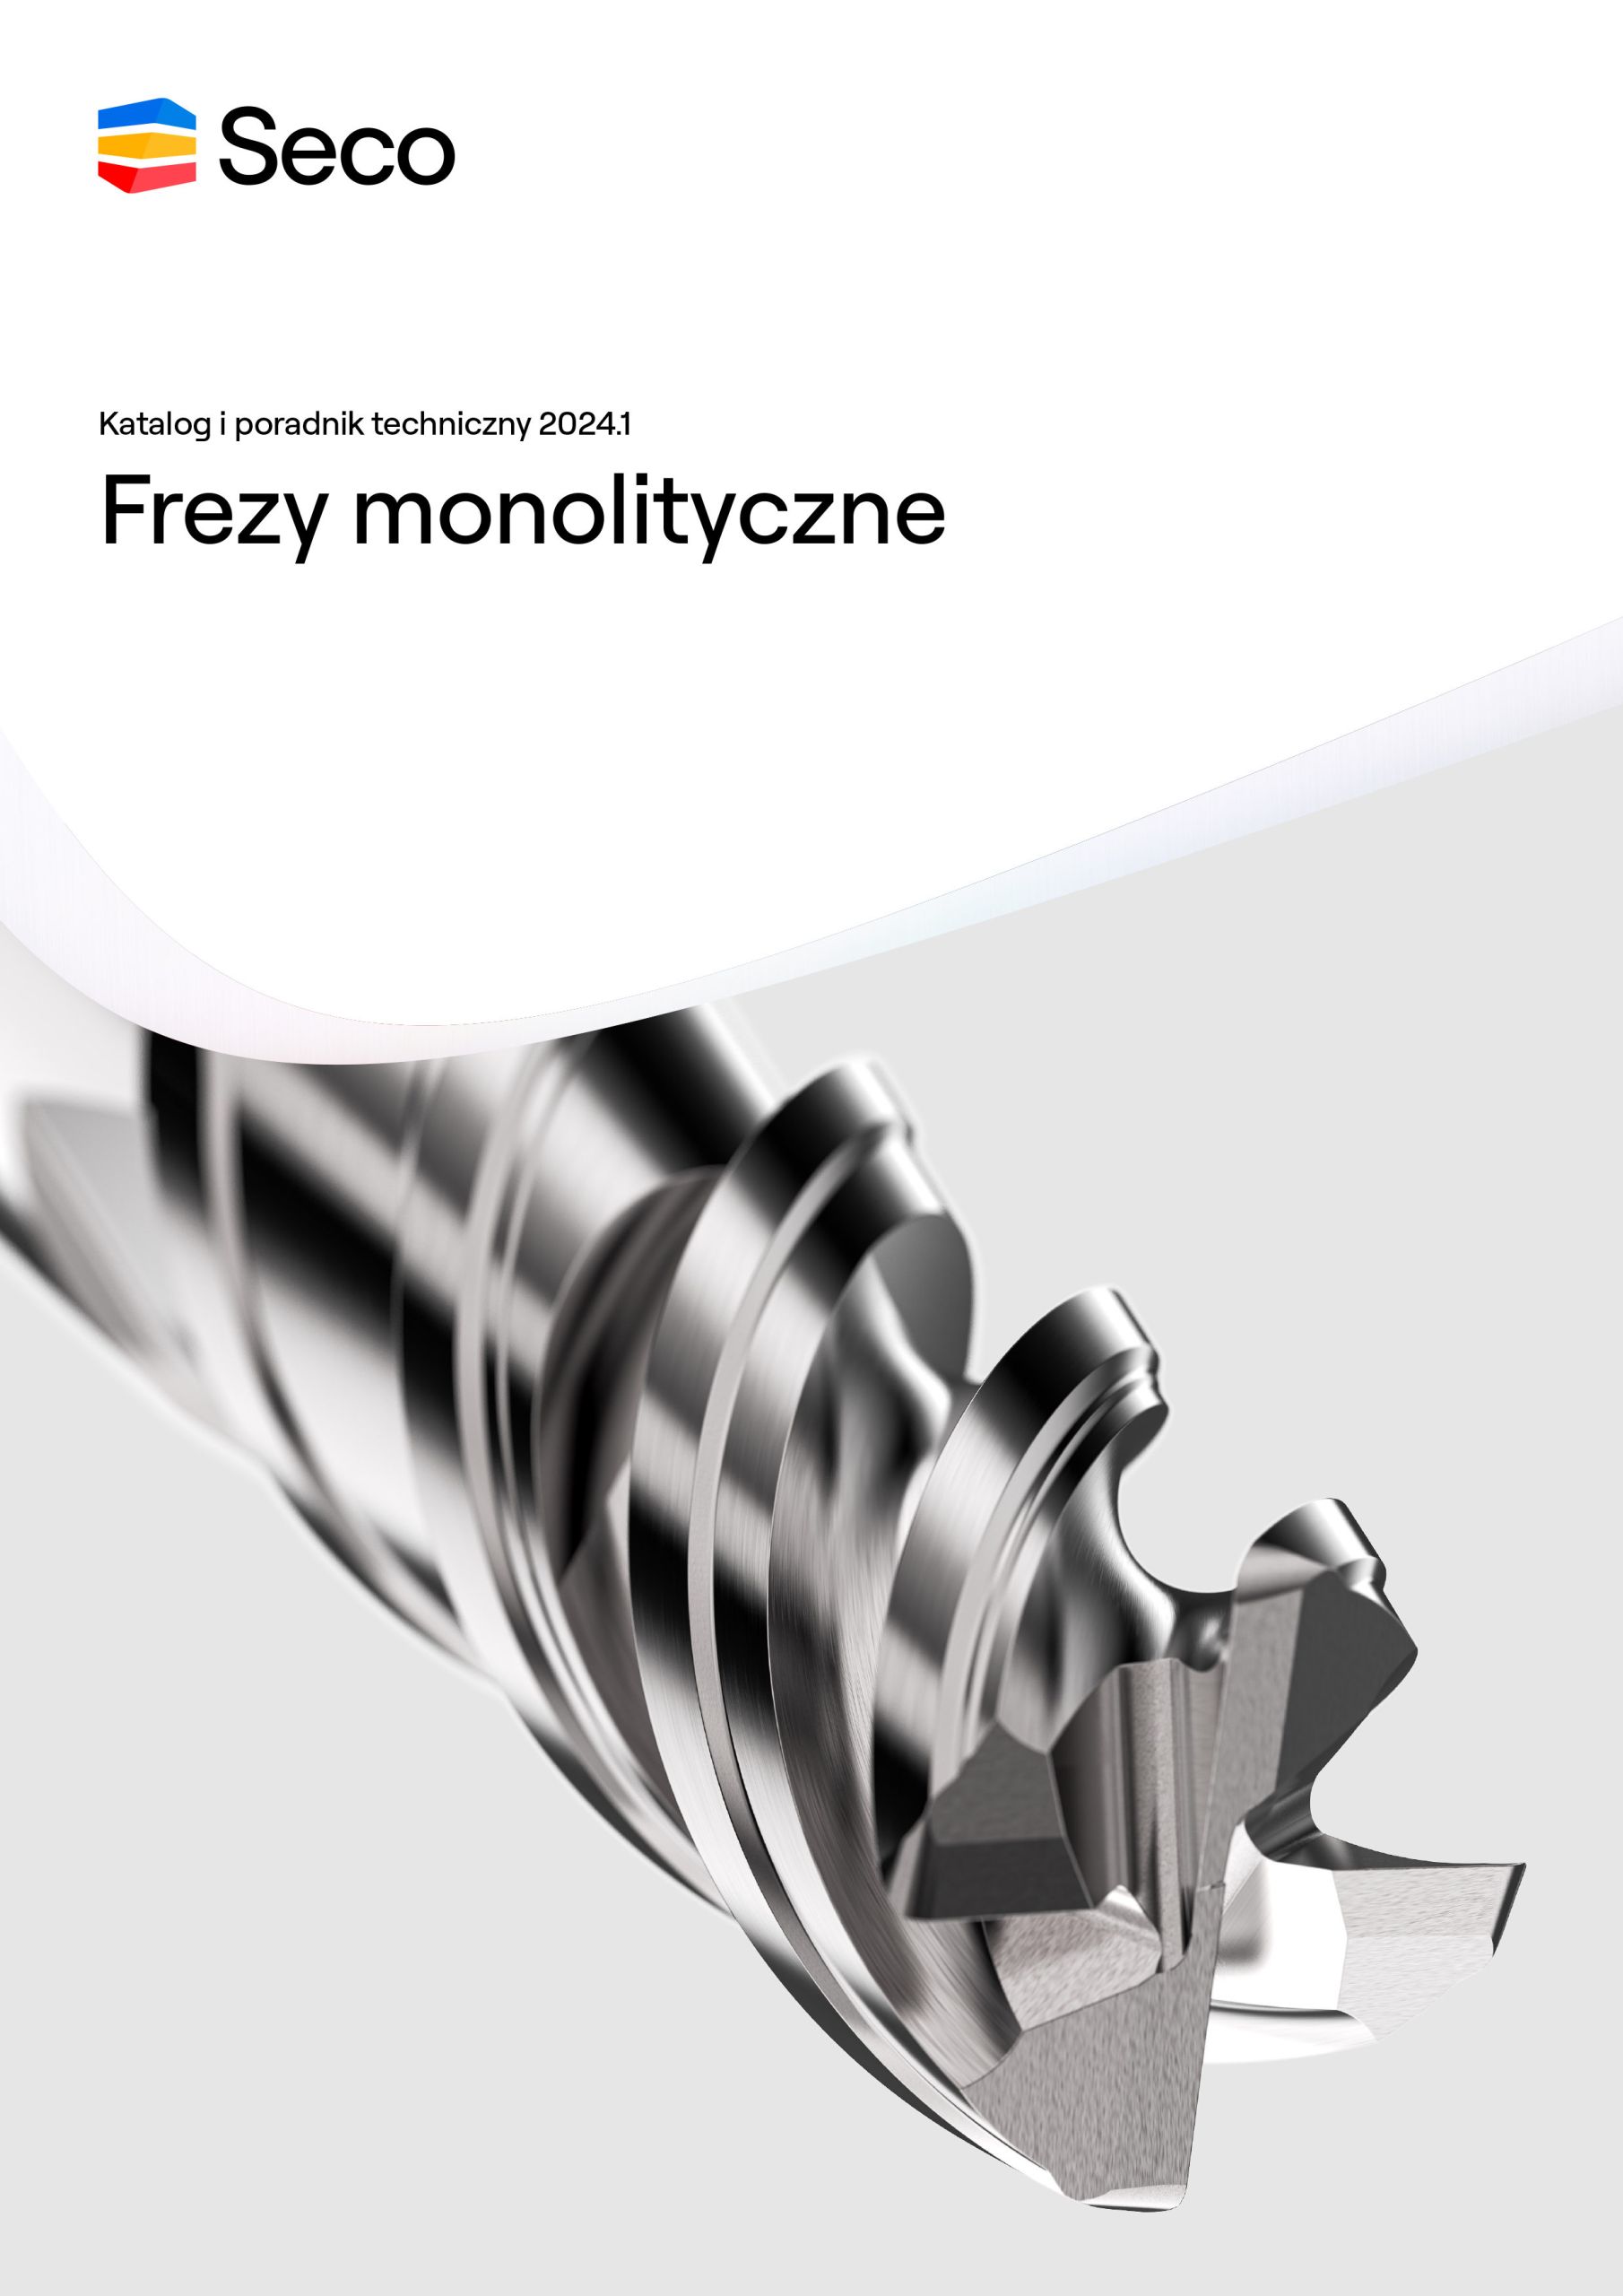 SECO-frezy-monolityczne-katalog narzedzia skrawajace